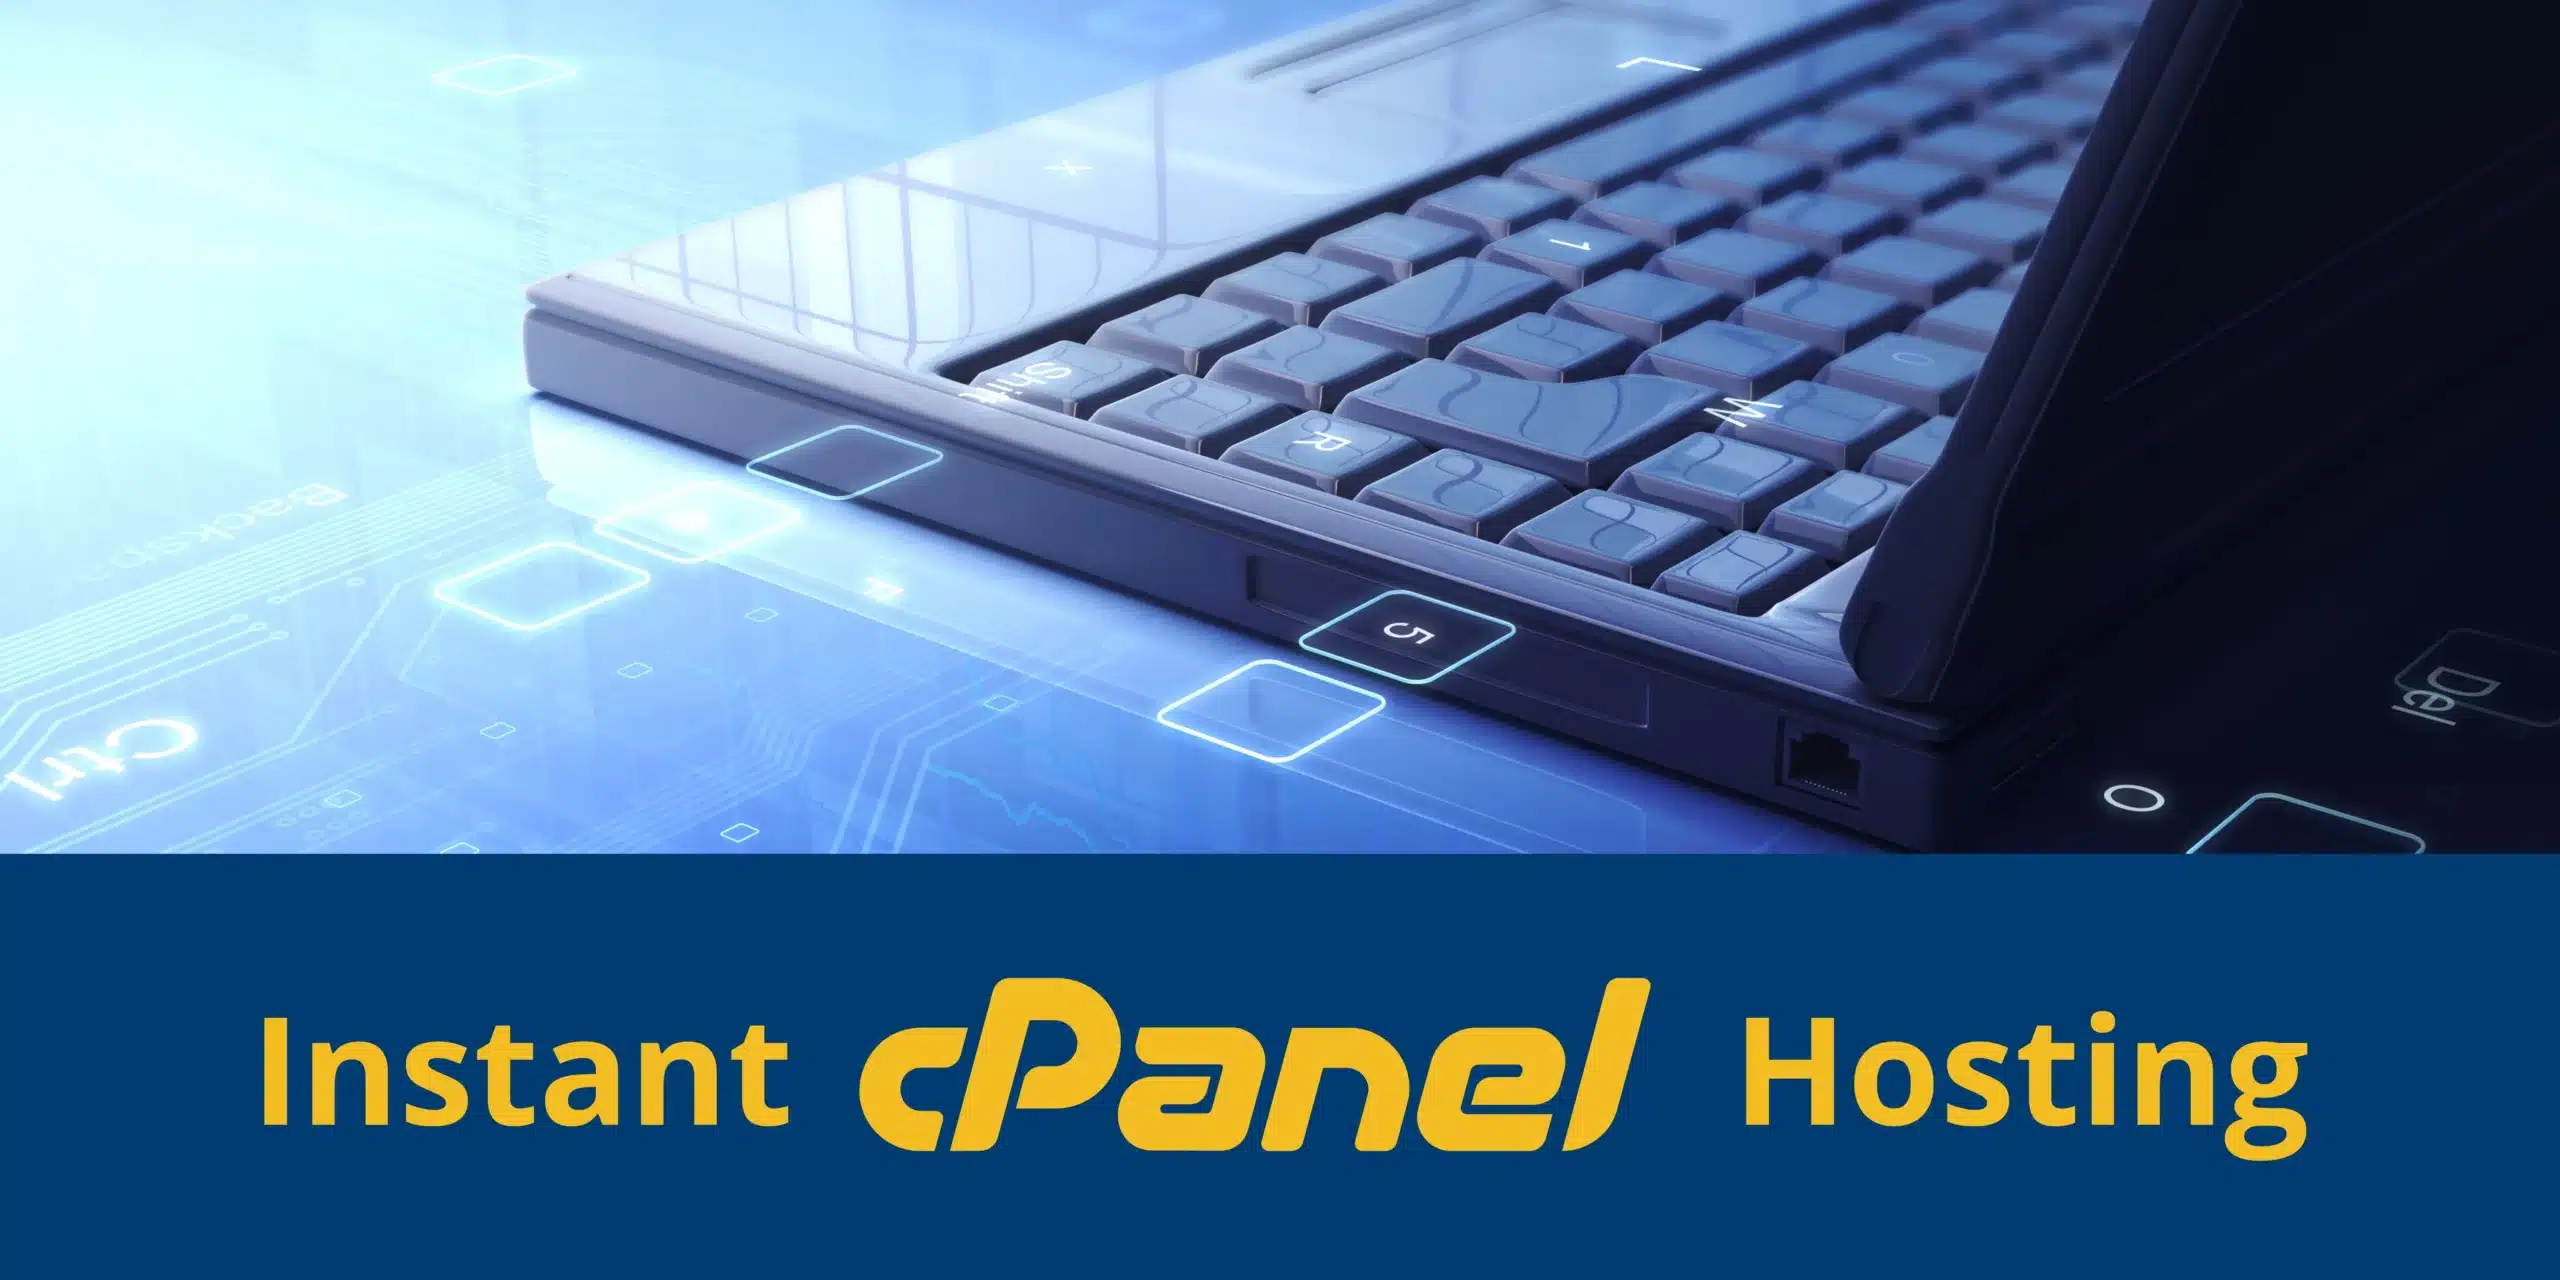 اقرأ المزيد عن مقالة استضافة Cpanel الفورية